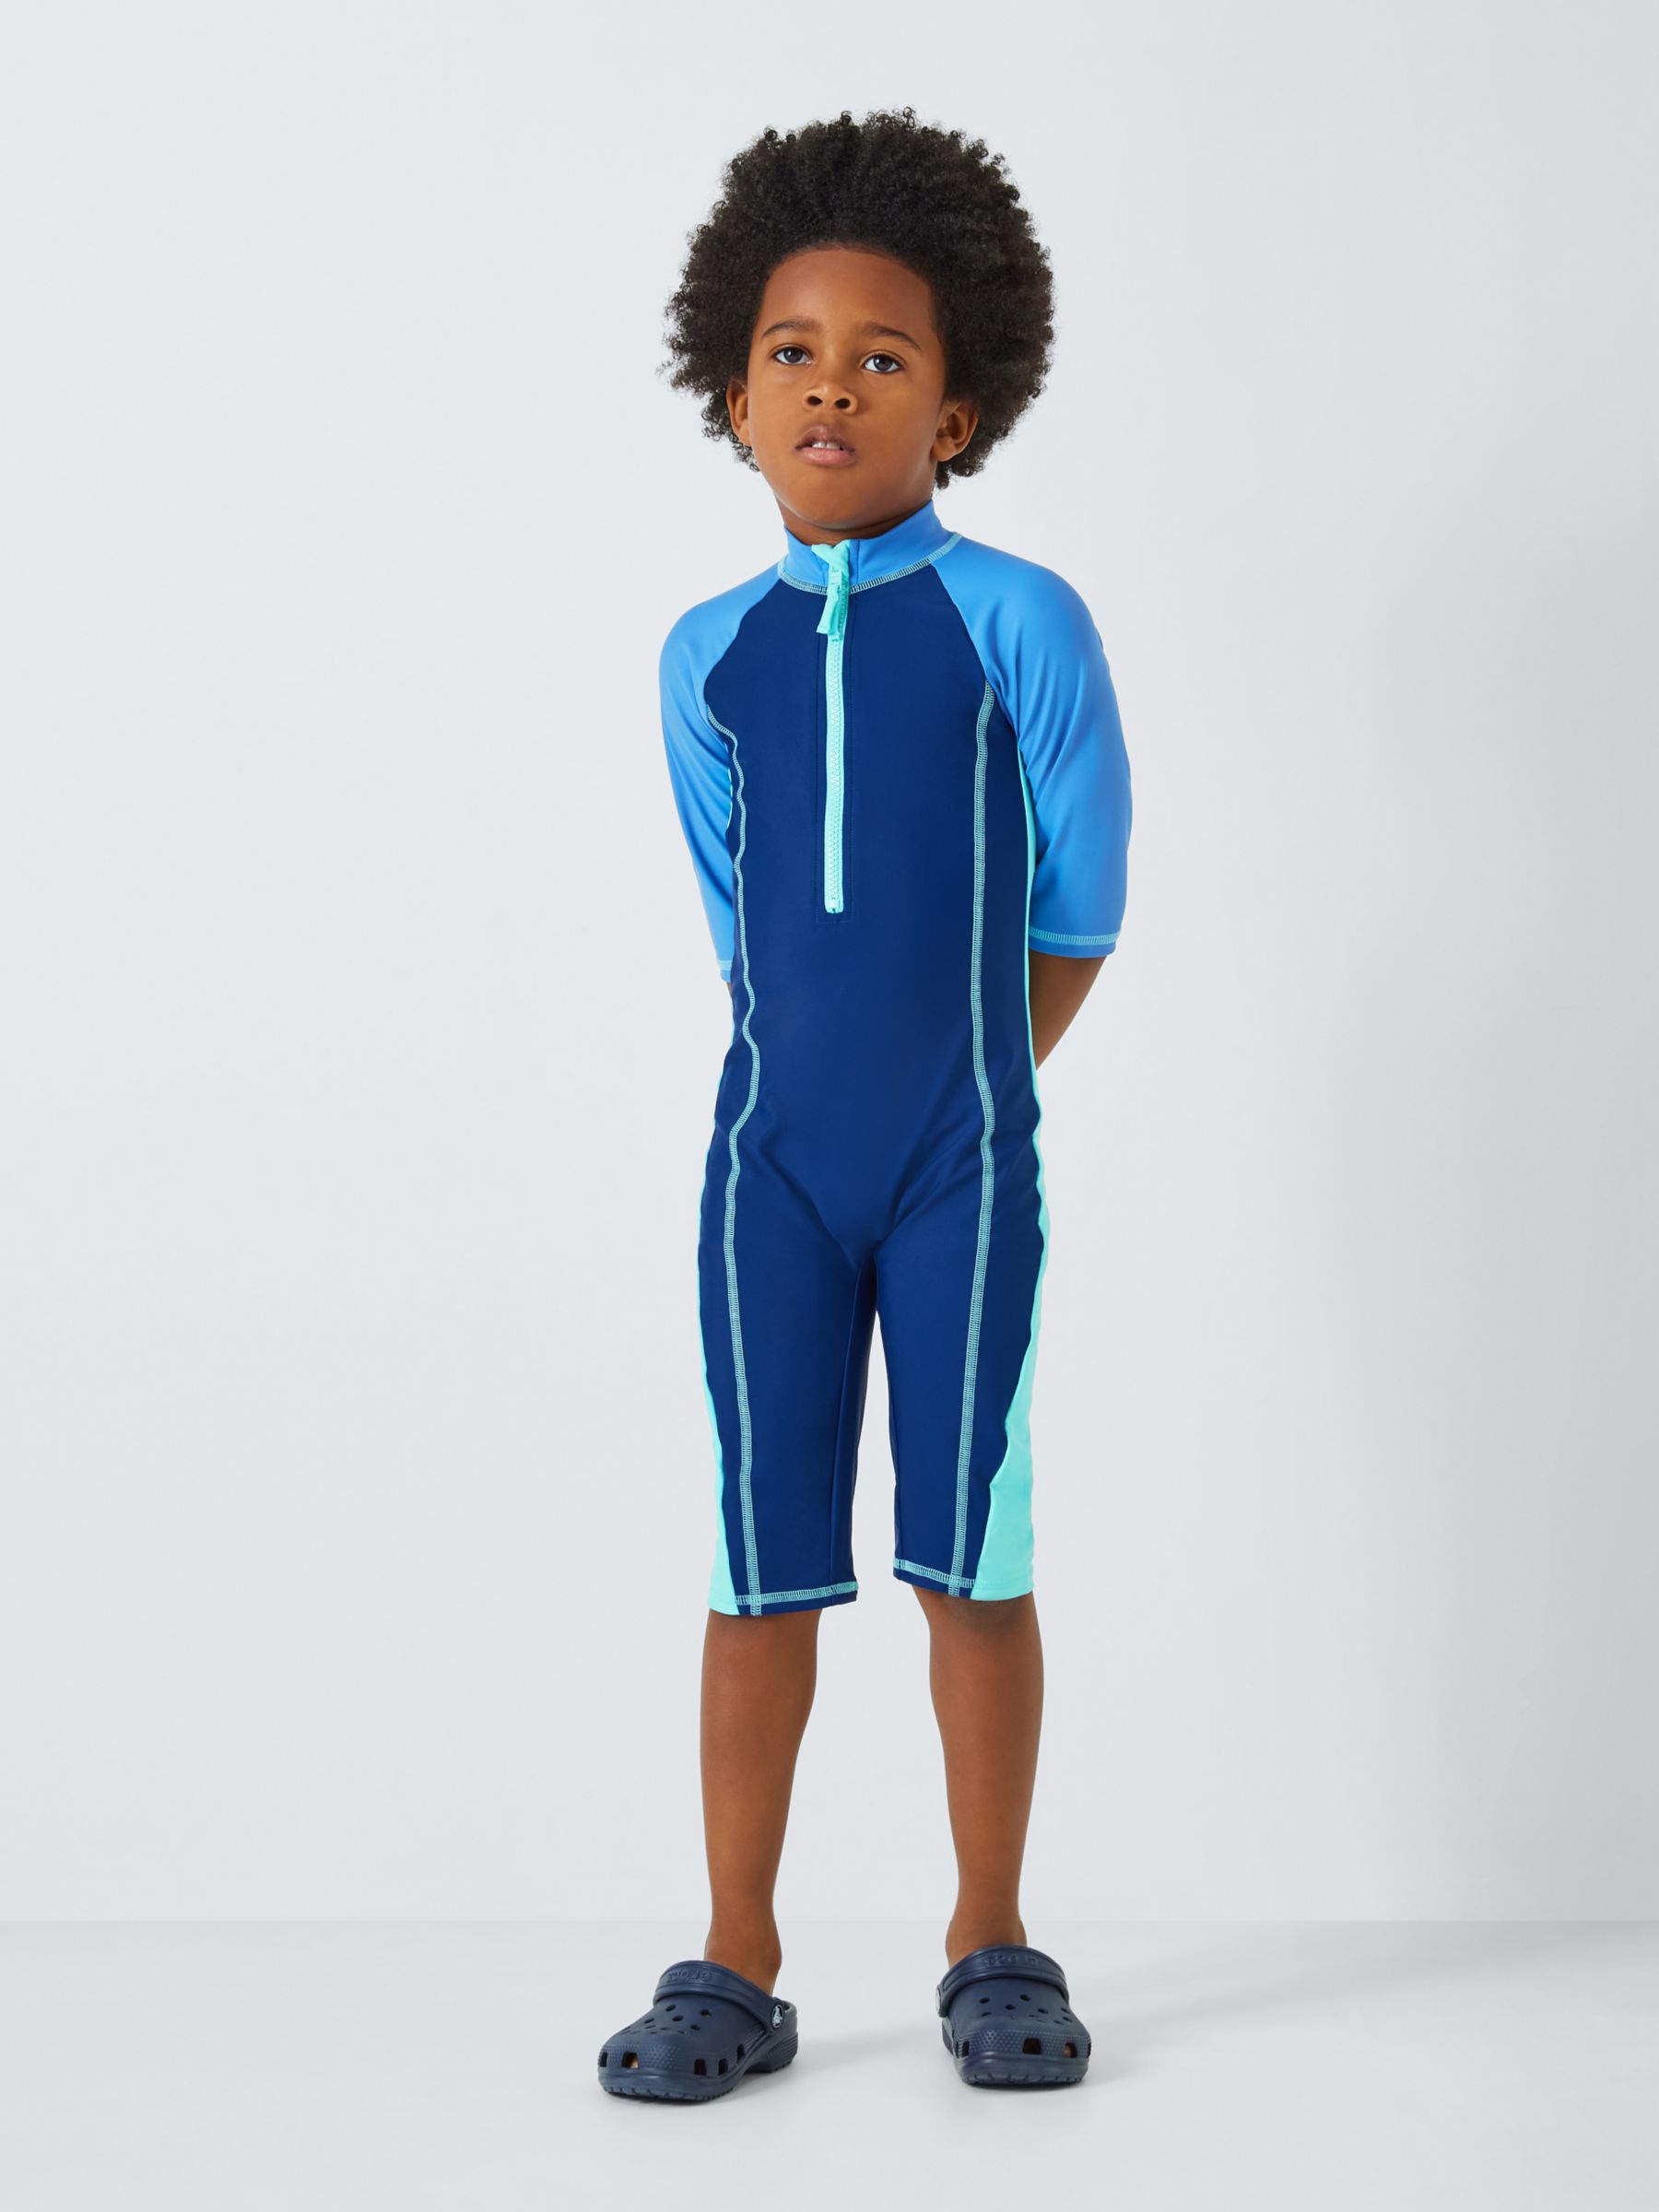 John Lewis Kids' Colourblock Sunpro Swimsuit, Blue/Multi, 7 years